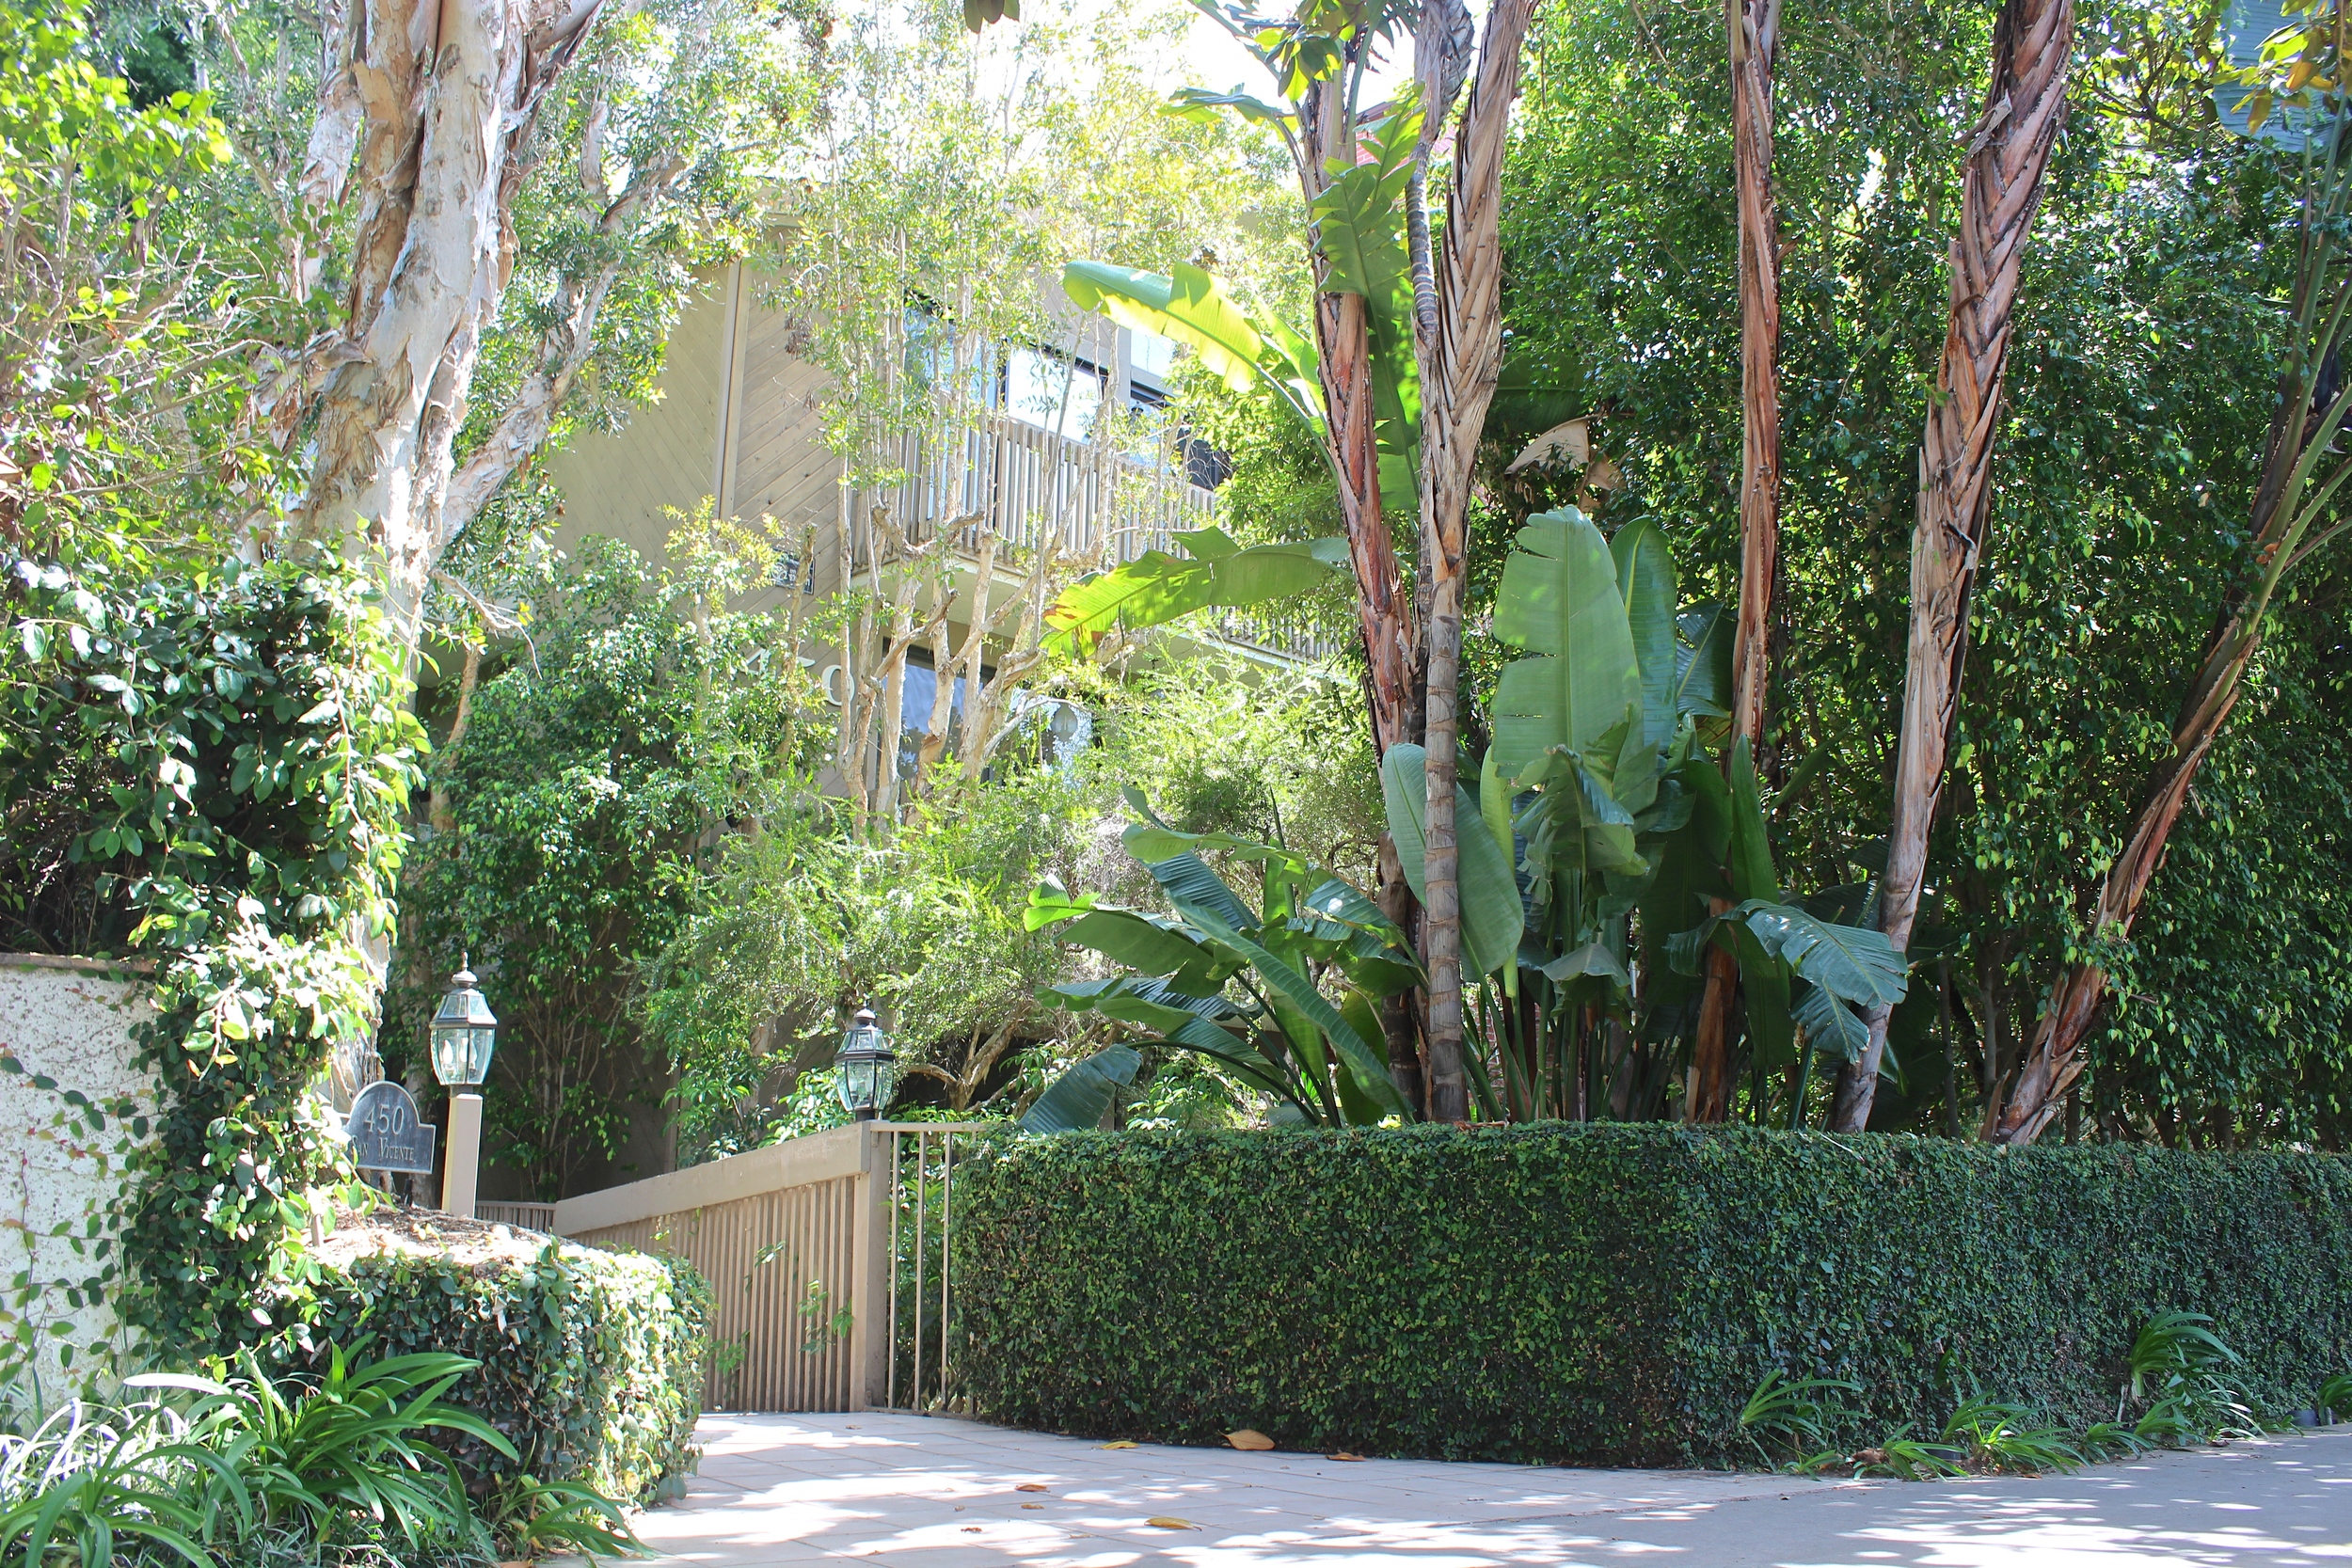 Trees and shrubs surrounding a condominium.